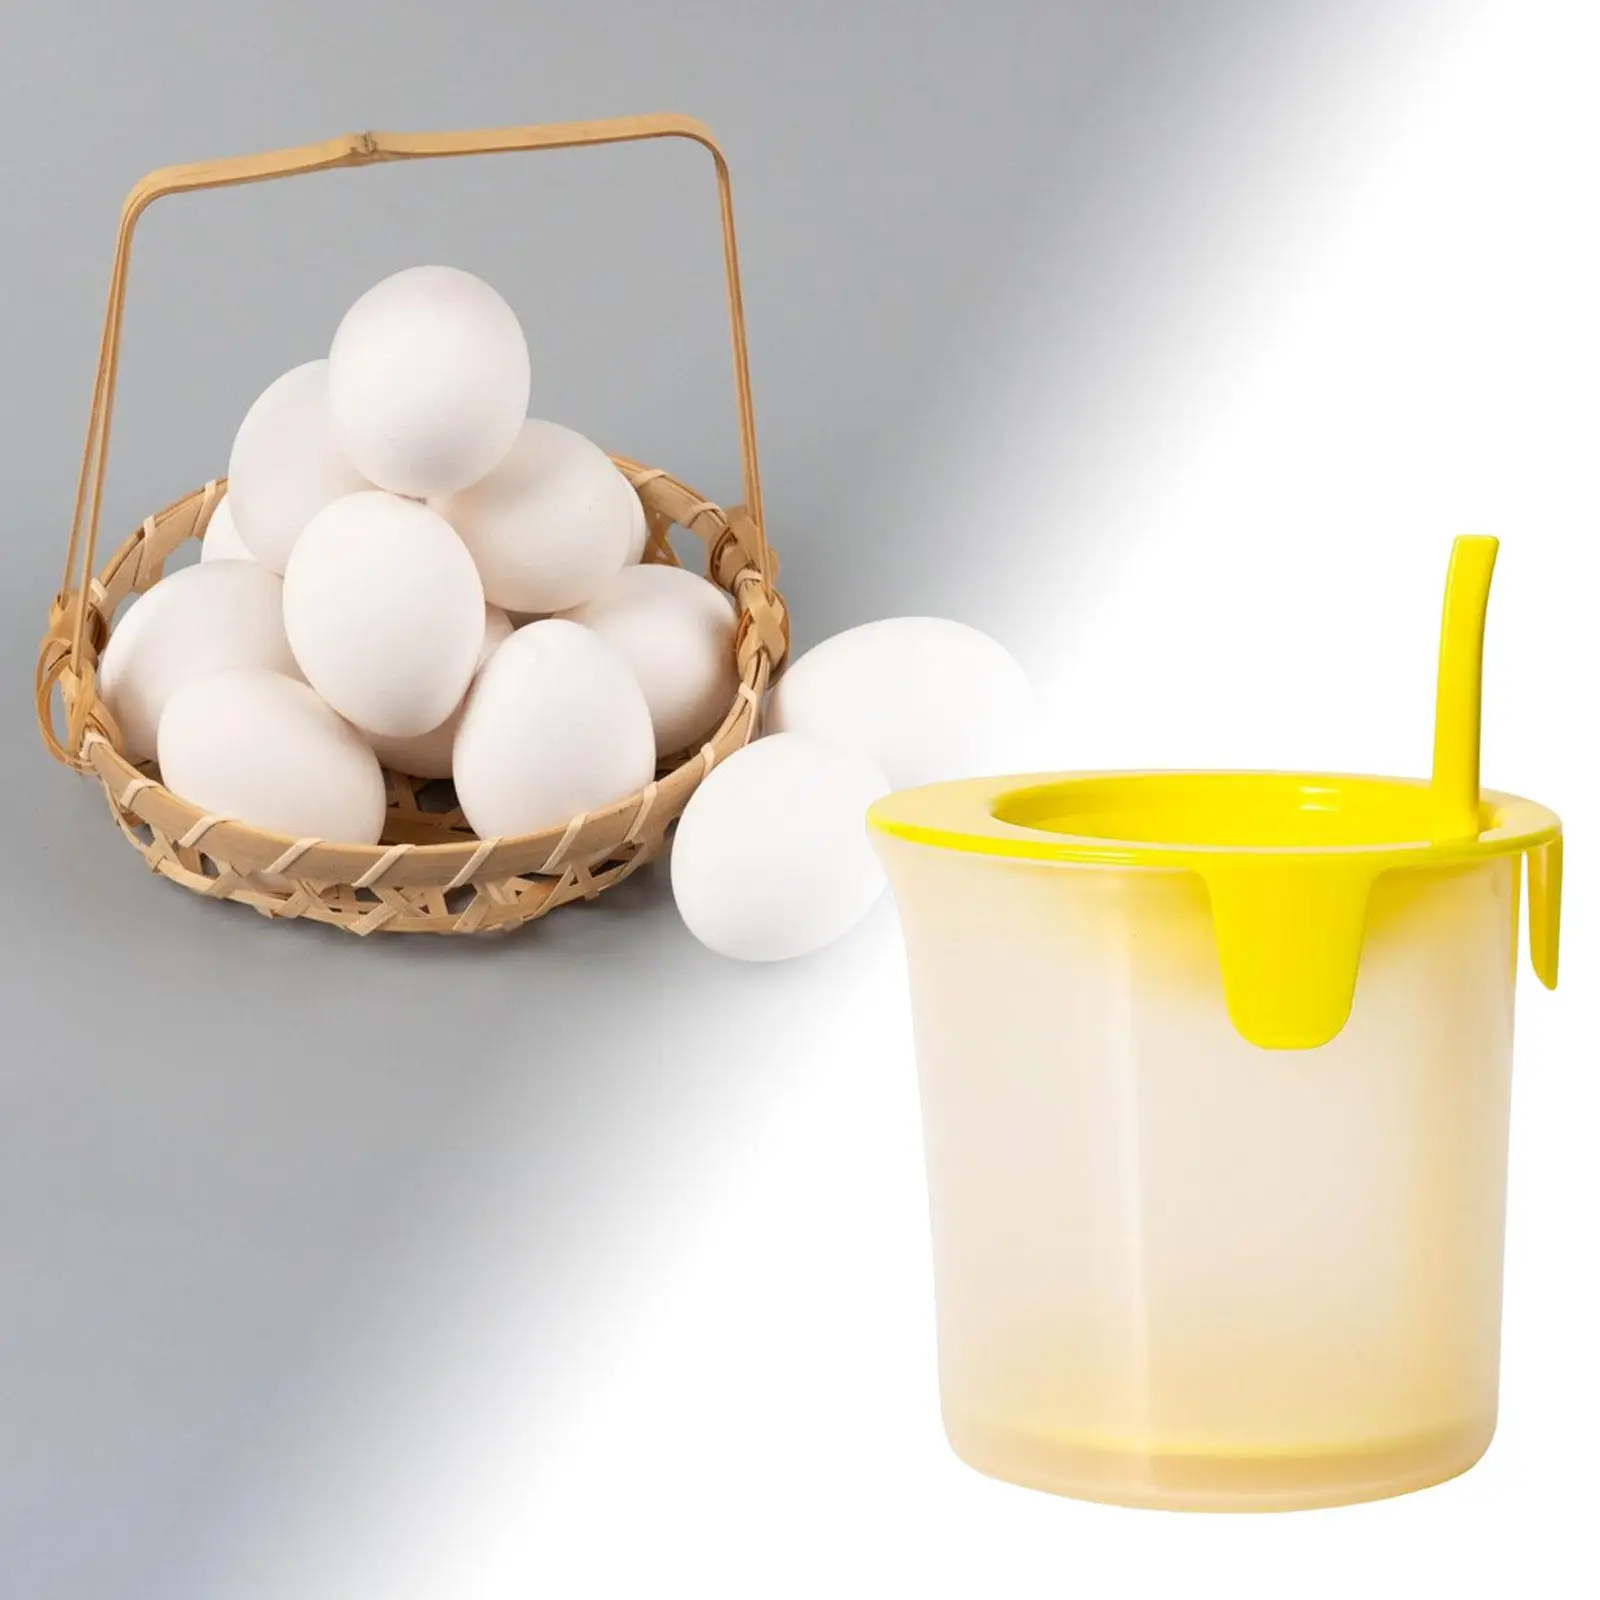 Egg Yolk Separator Baking Assistant Manual Hand Durable Practical Multi Use Egg Yolk Egg White Separator for Bakery Utensils